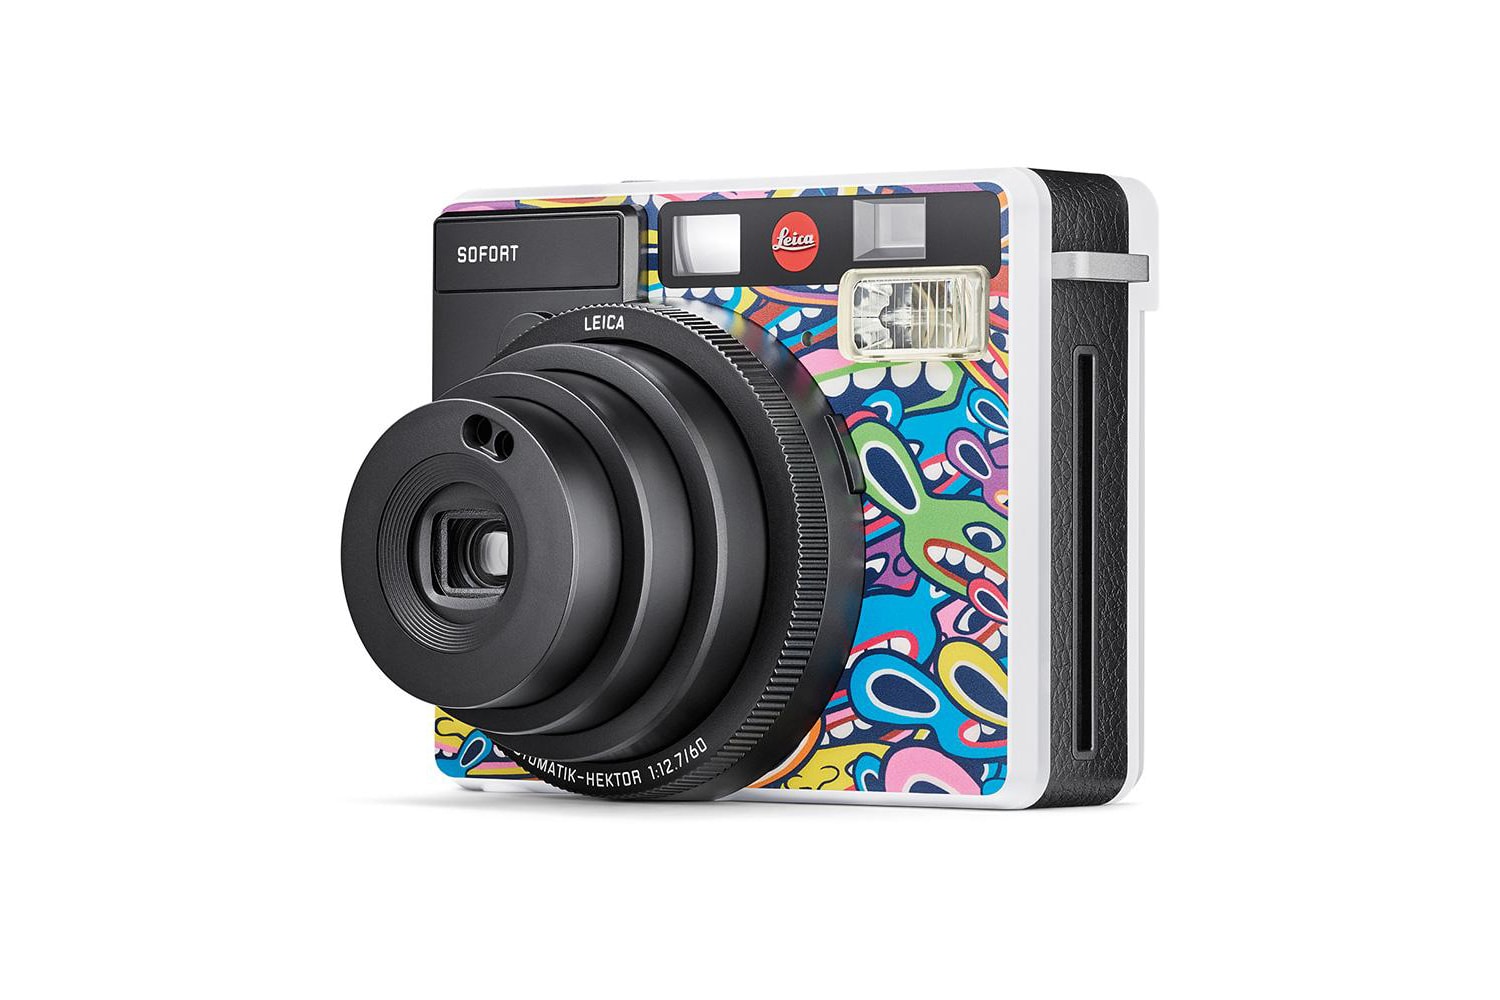 Leica LimoLand Sofort Jean Pigozzi Special Edition Camera Instant Camera